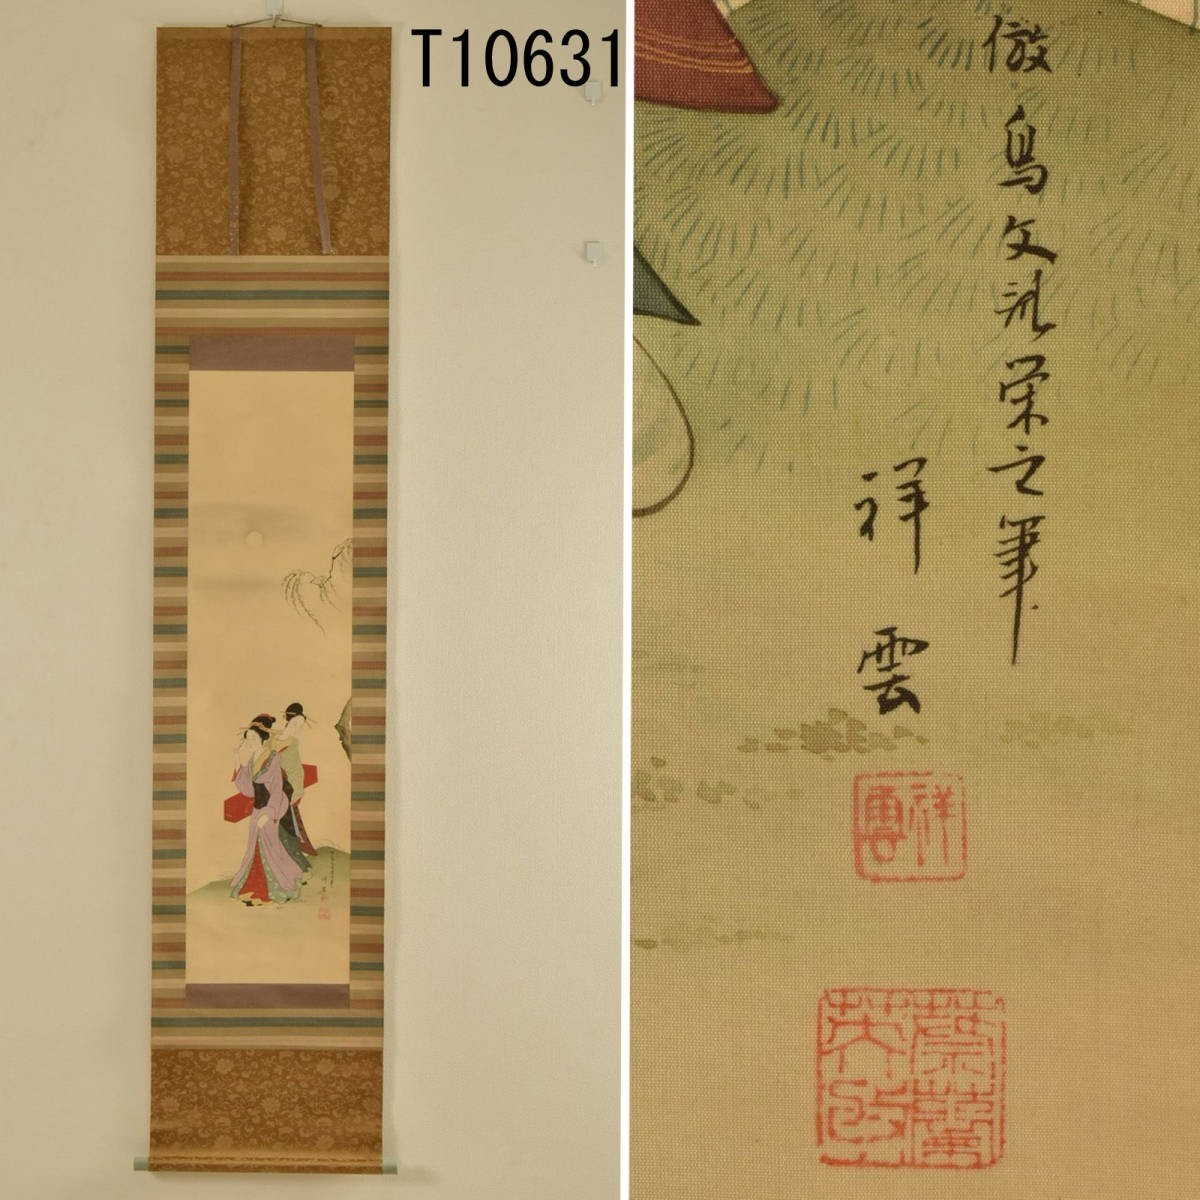 T10631 शोन: सुंदर महिला लटकती हुई स्क्रॉल: असली, चित्रकारी, जापानी चित्रकला, व्यक्ति, बोधिसत्त्व